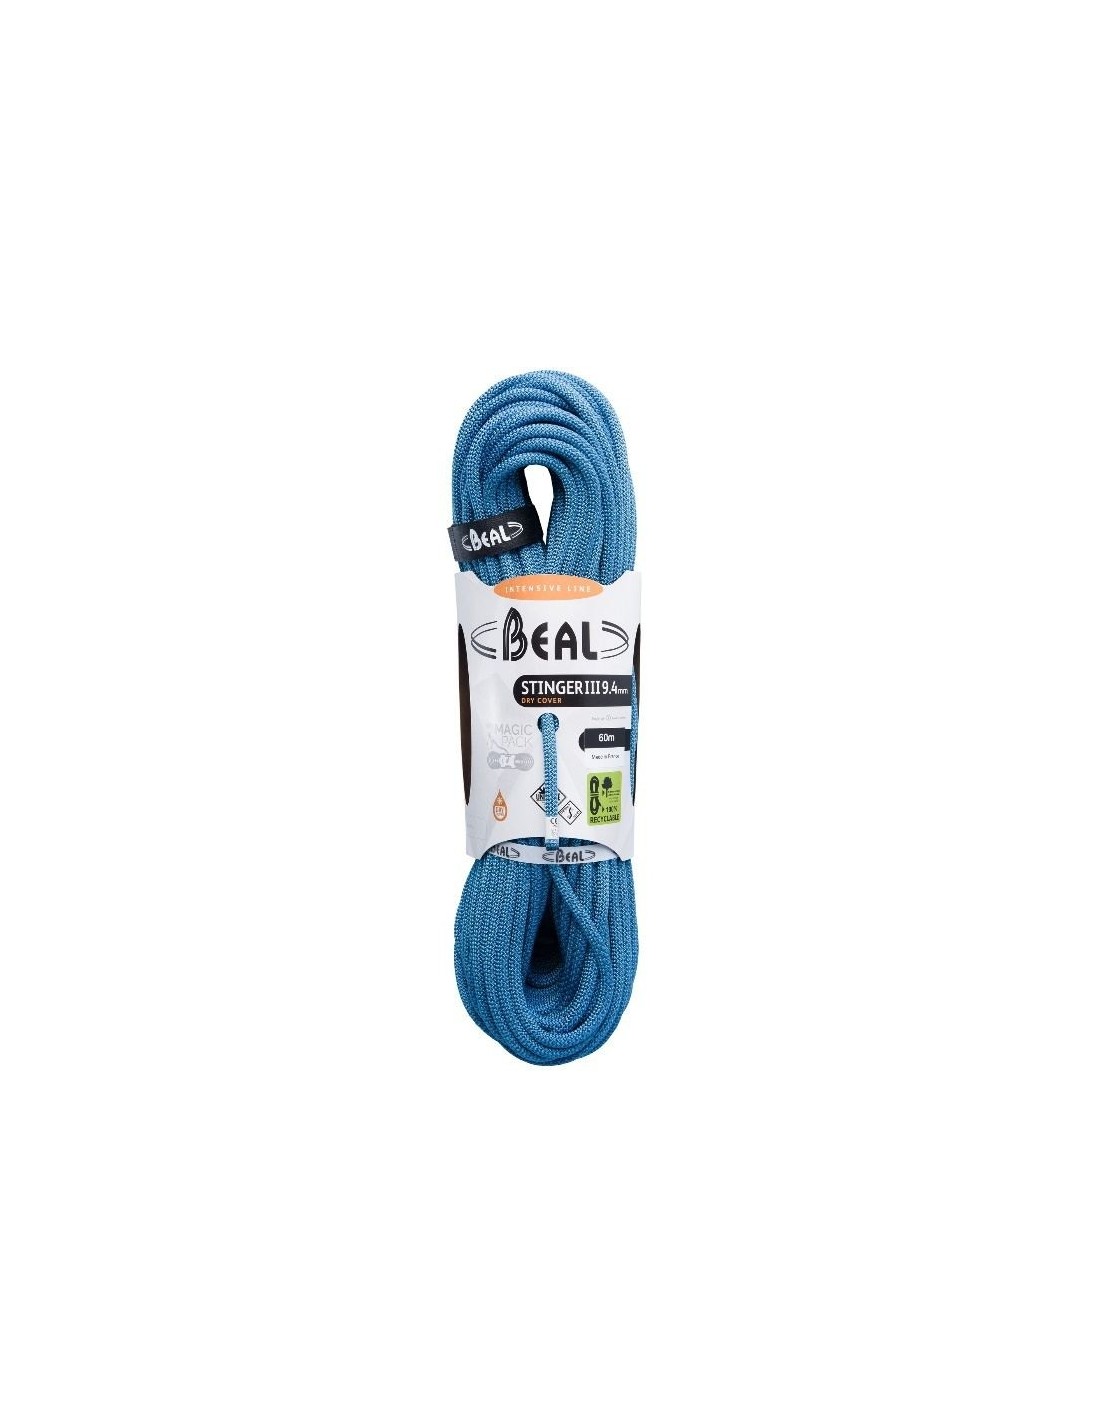 Beal Kletterseil Stinger III 9,4 mm - Unicore - Dry Cover - 50 Meter- Blue Seildurchmesser - 9.1 - 9.5 mm, Seilvariante - Einfachseil, Seilgewicht - 56 - 60 g / m, Seilfarbe - Blau, Seillänge - 50 m, von Beal